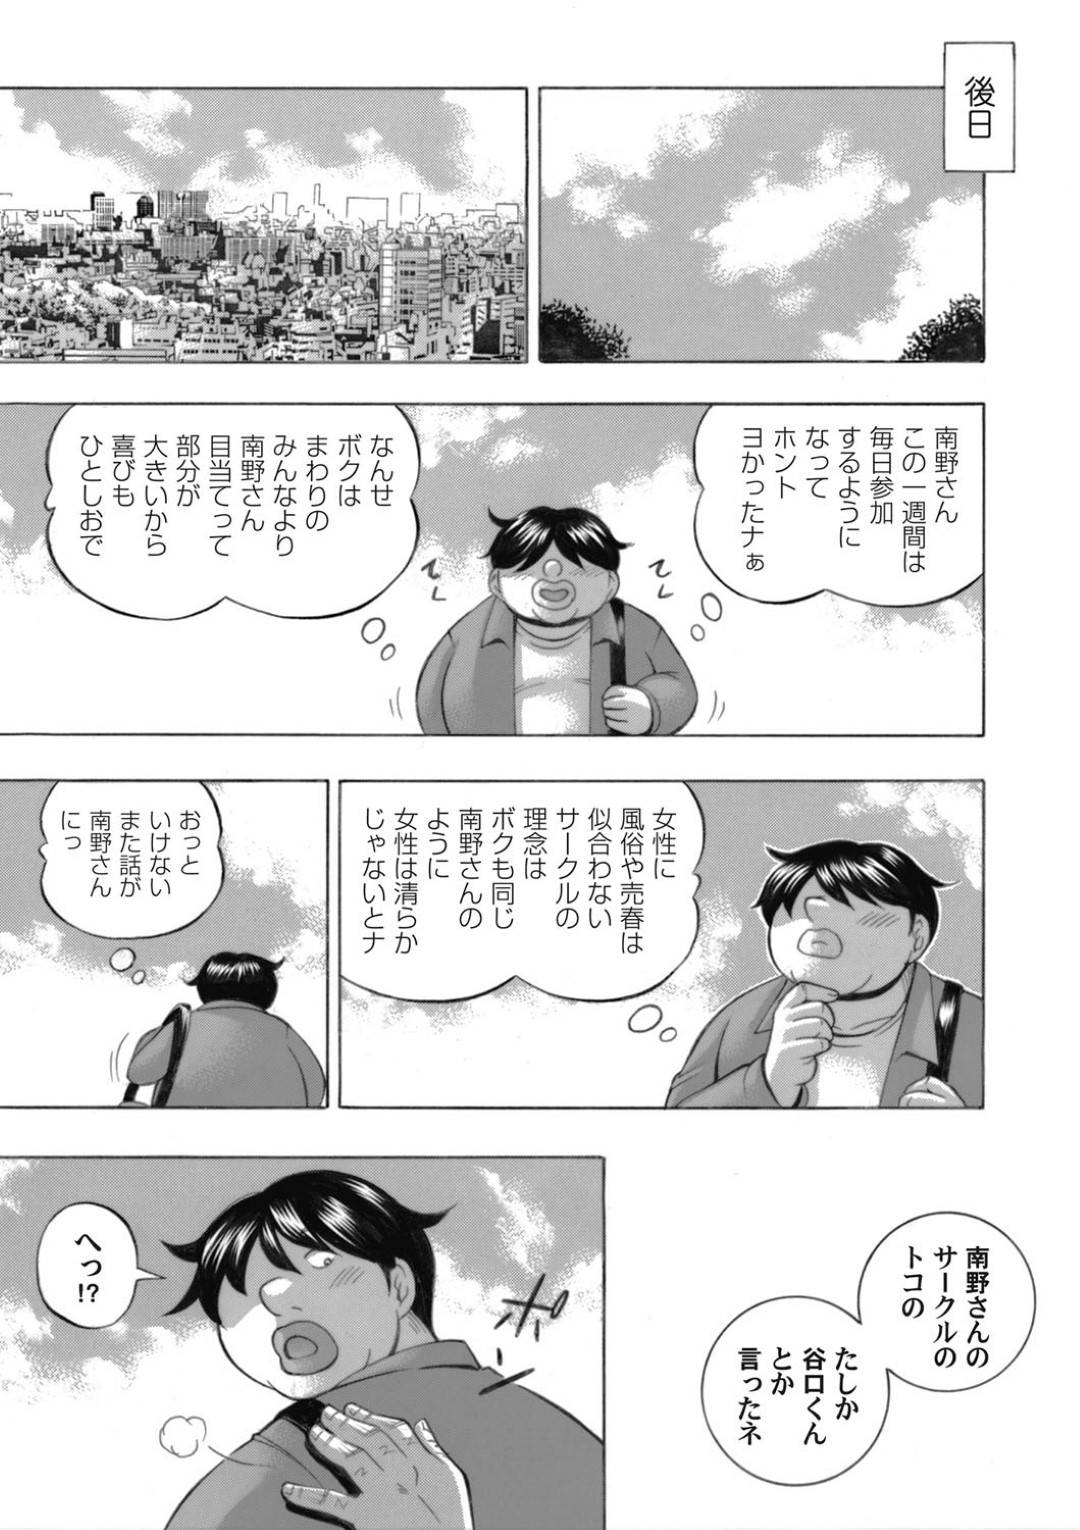 【エロ漫画】サークル内で内通者がいると話になり疑われそうになった裕香は、市長に会うのをしばらく辞めたいと告げると・・・【中華なると】